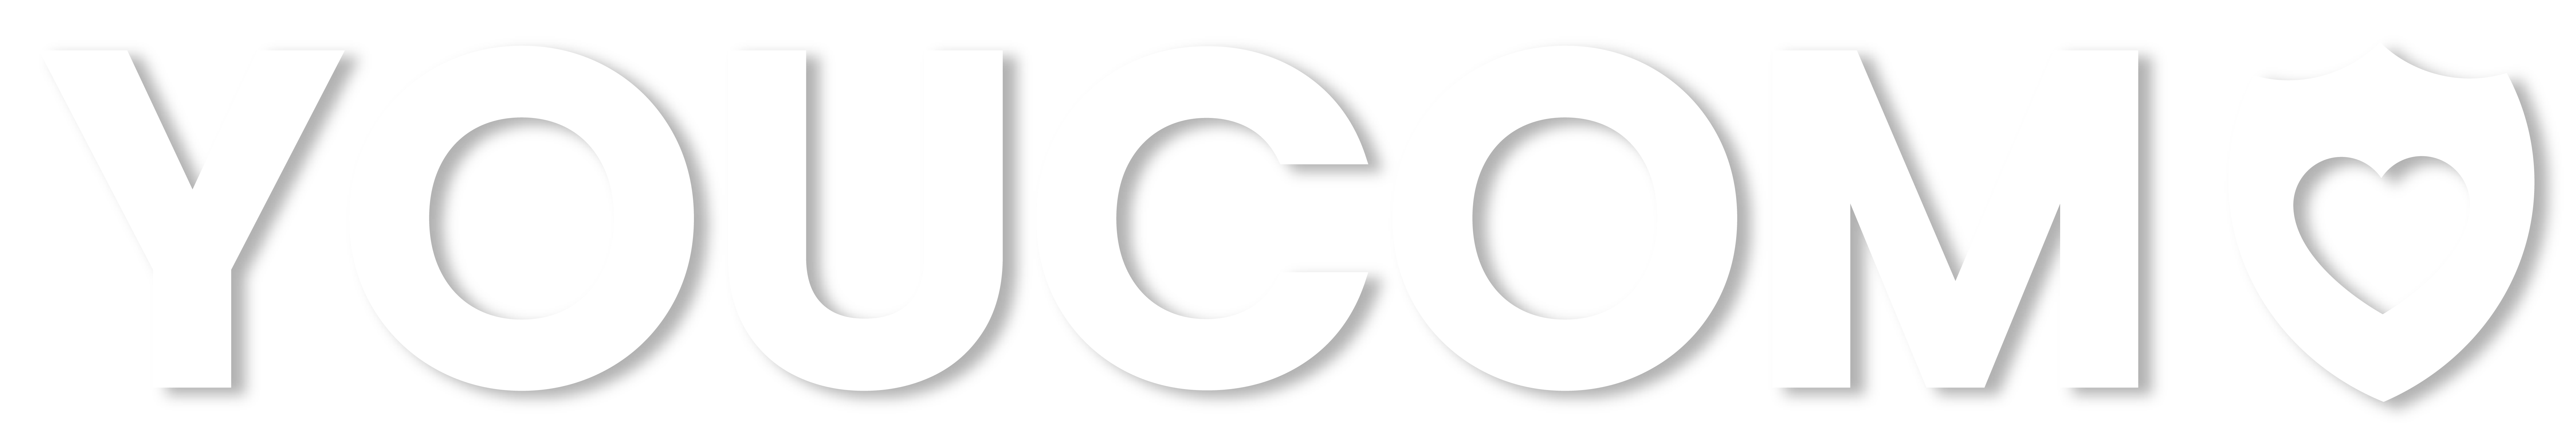 YOUCOM_Logo-2021-RVB_nom-blanc